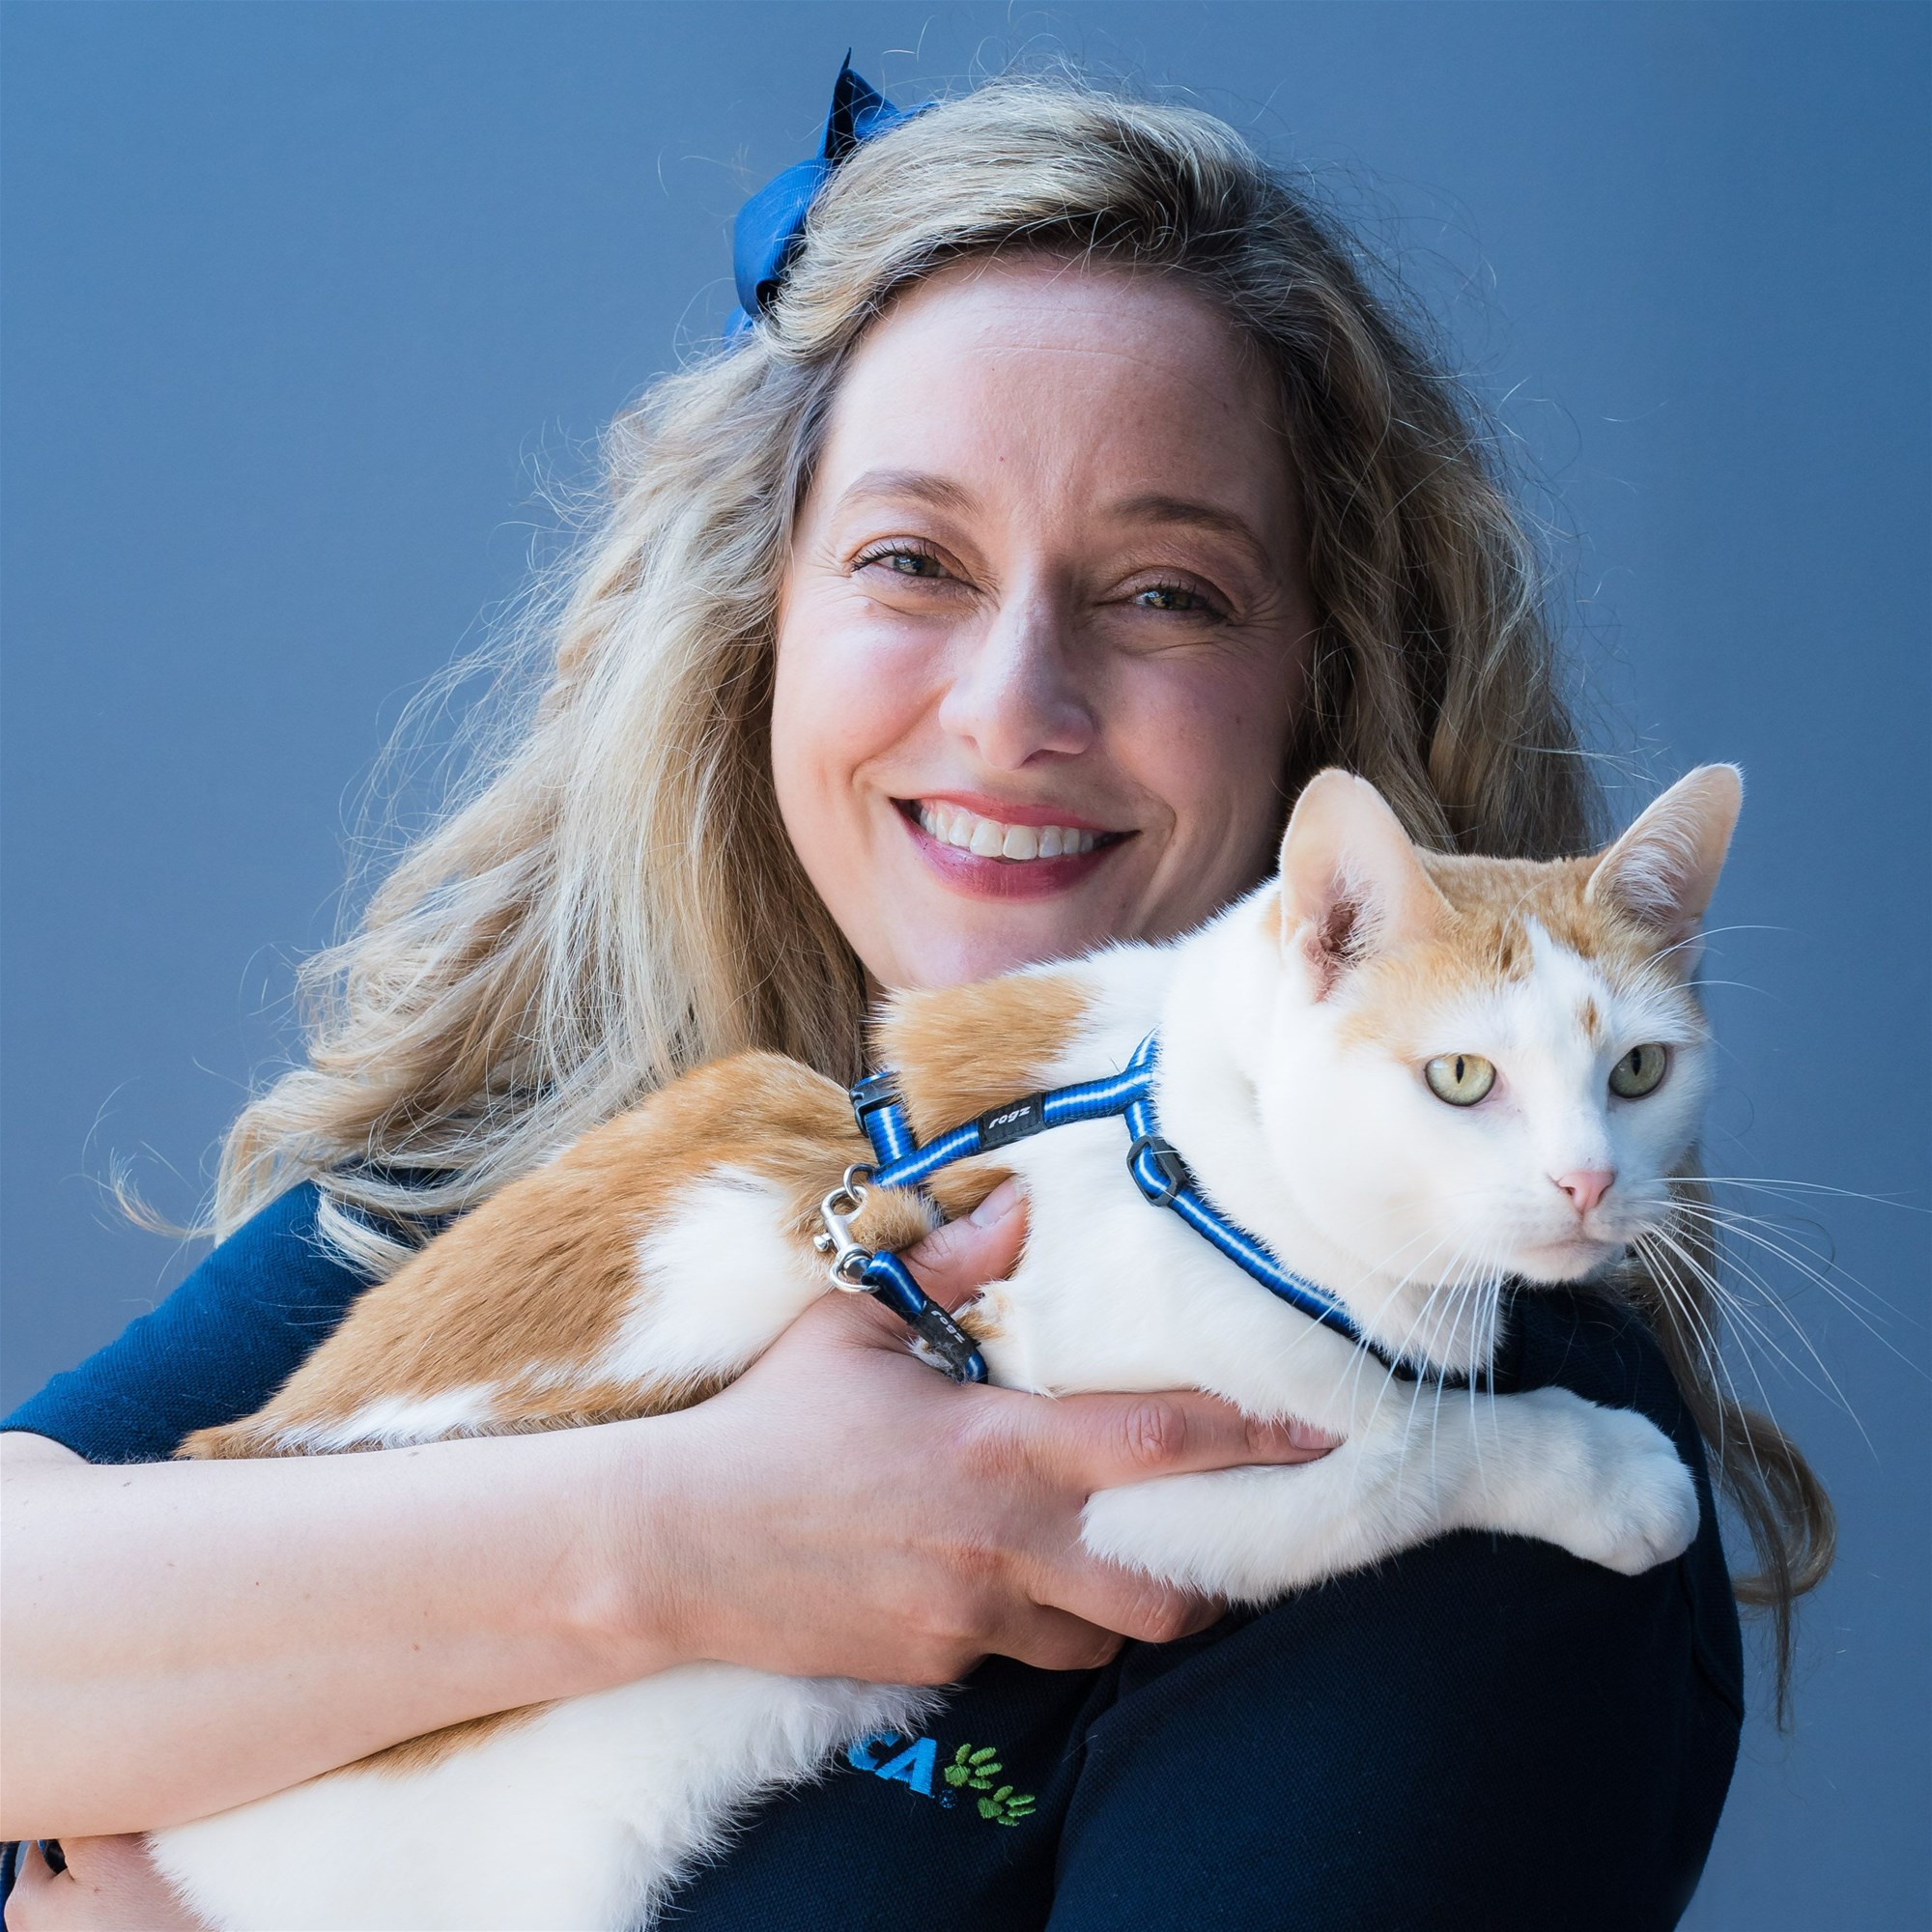 SPCA Tem member Justine Interview